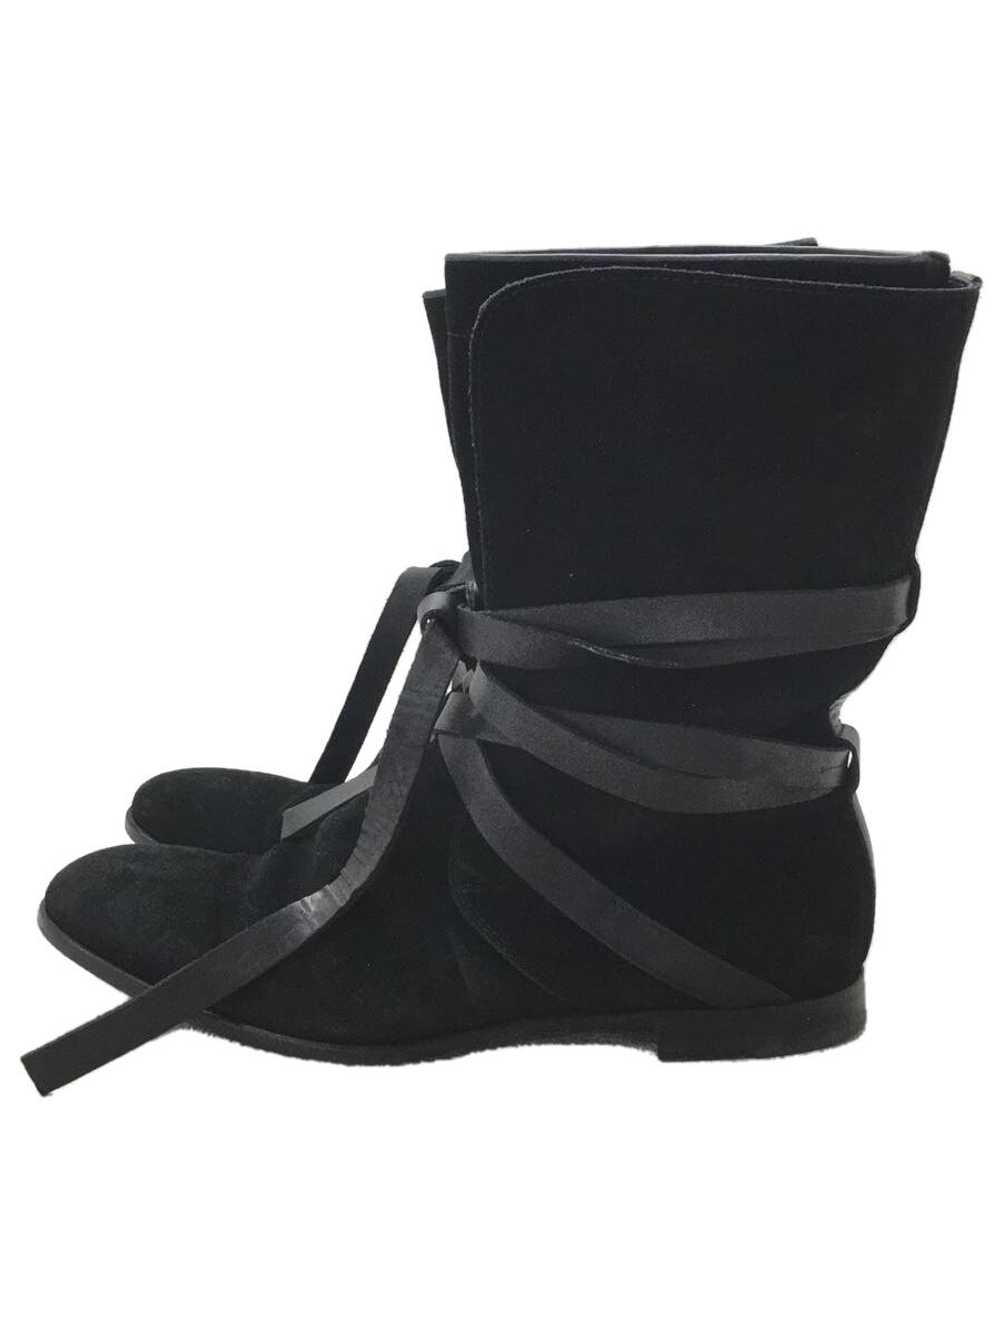 Yves Saint Laurent Boots/40/Blk/Suede Shoes BUR51 - image 1